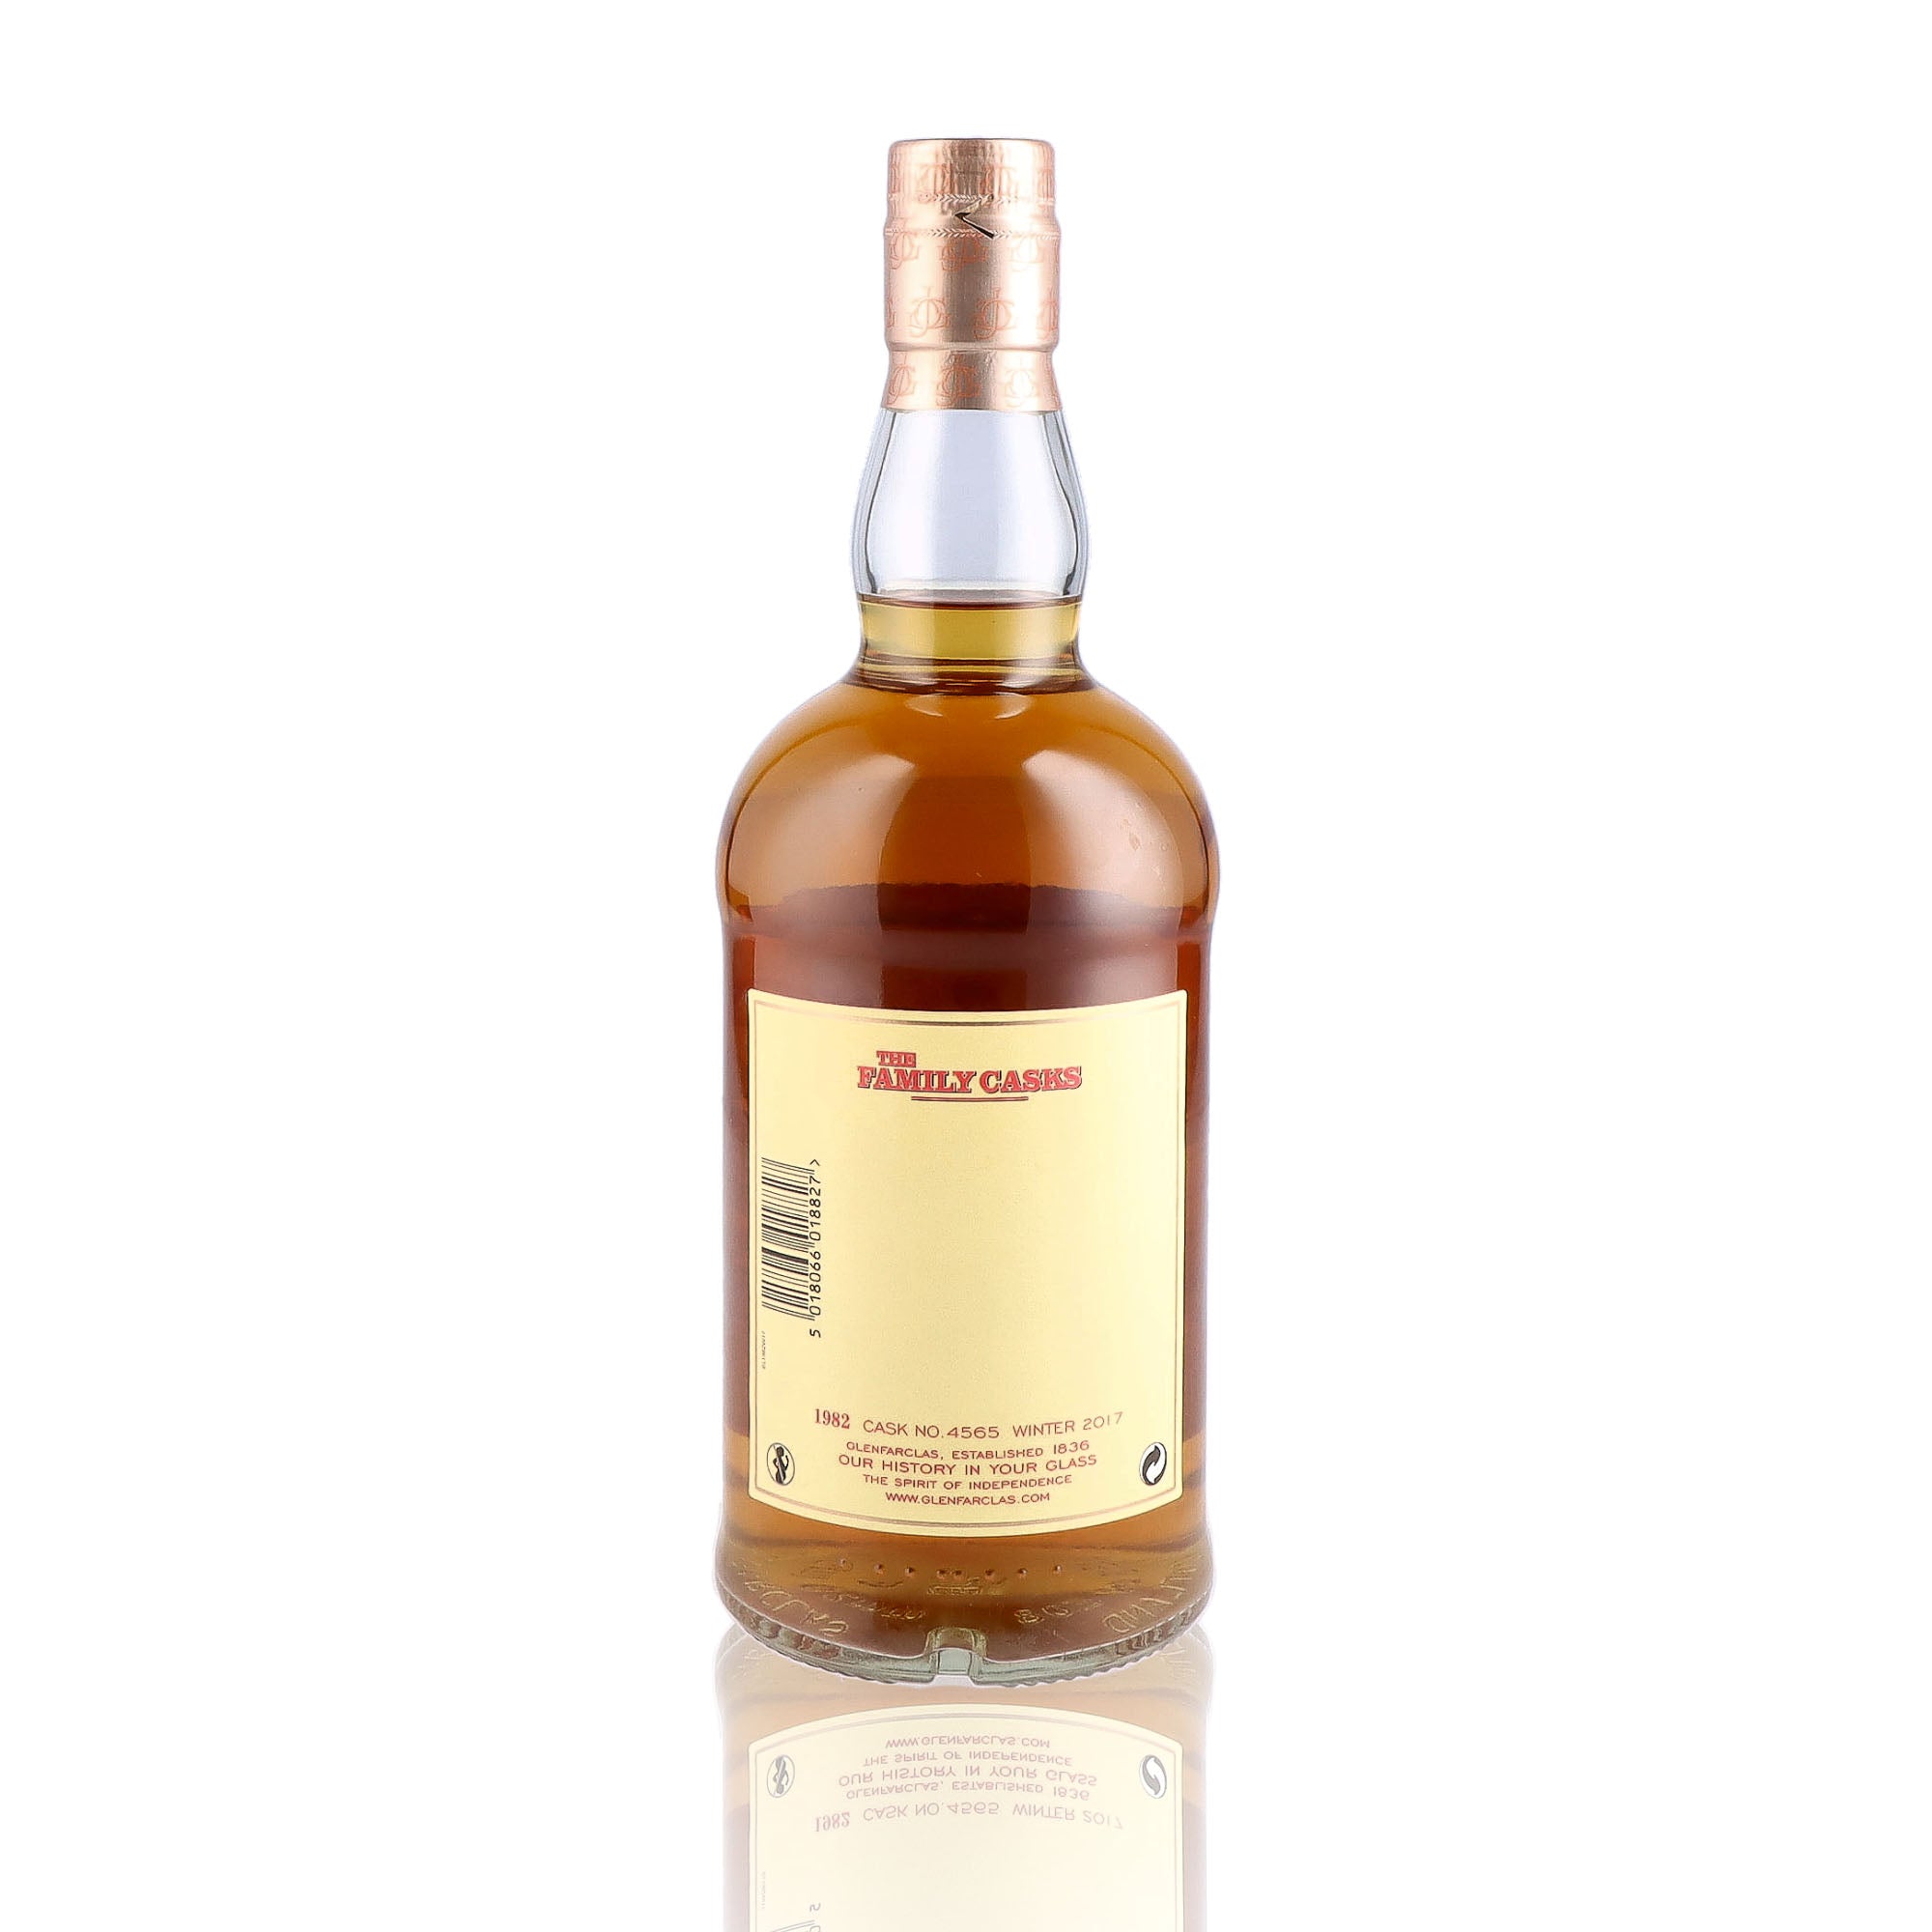 Une bouteille de Scotch Whisky Single Malt de la marque Glenfarclas, nommée The Family Casks, 35 ans d'âge, du millésime 1982.